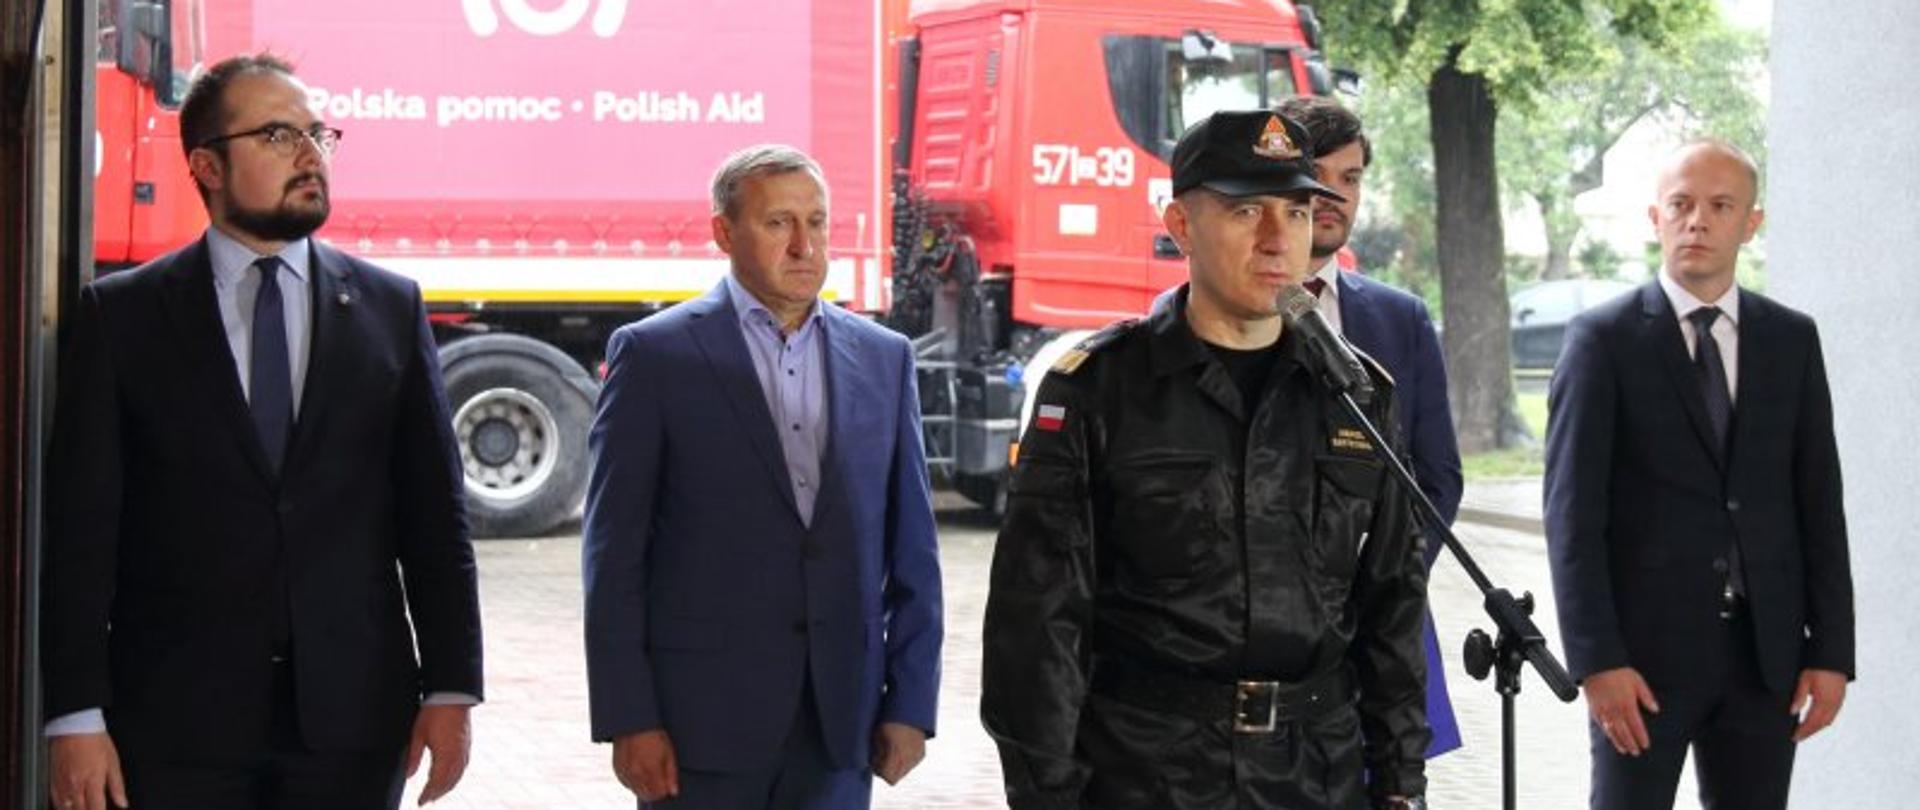 Polscy strażacy ponownie jadą z pomocą – na zdjęciu przemawia nadbryg. Andrzej Bartkowiak komendant główny PSP. W tle ciężarówki z konwoju.